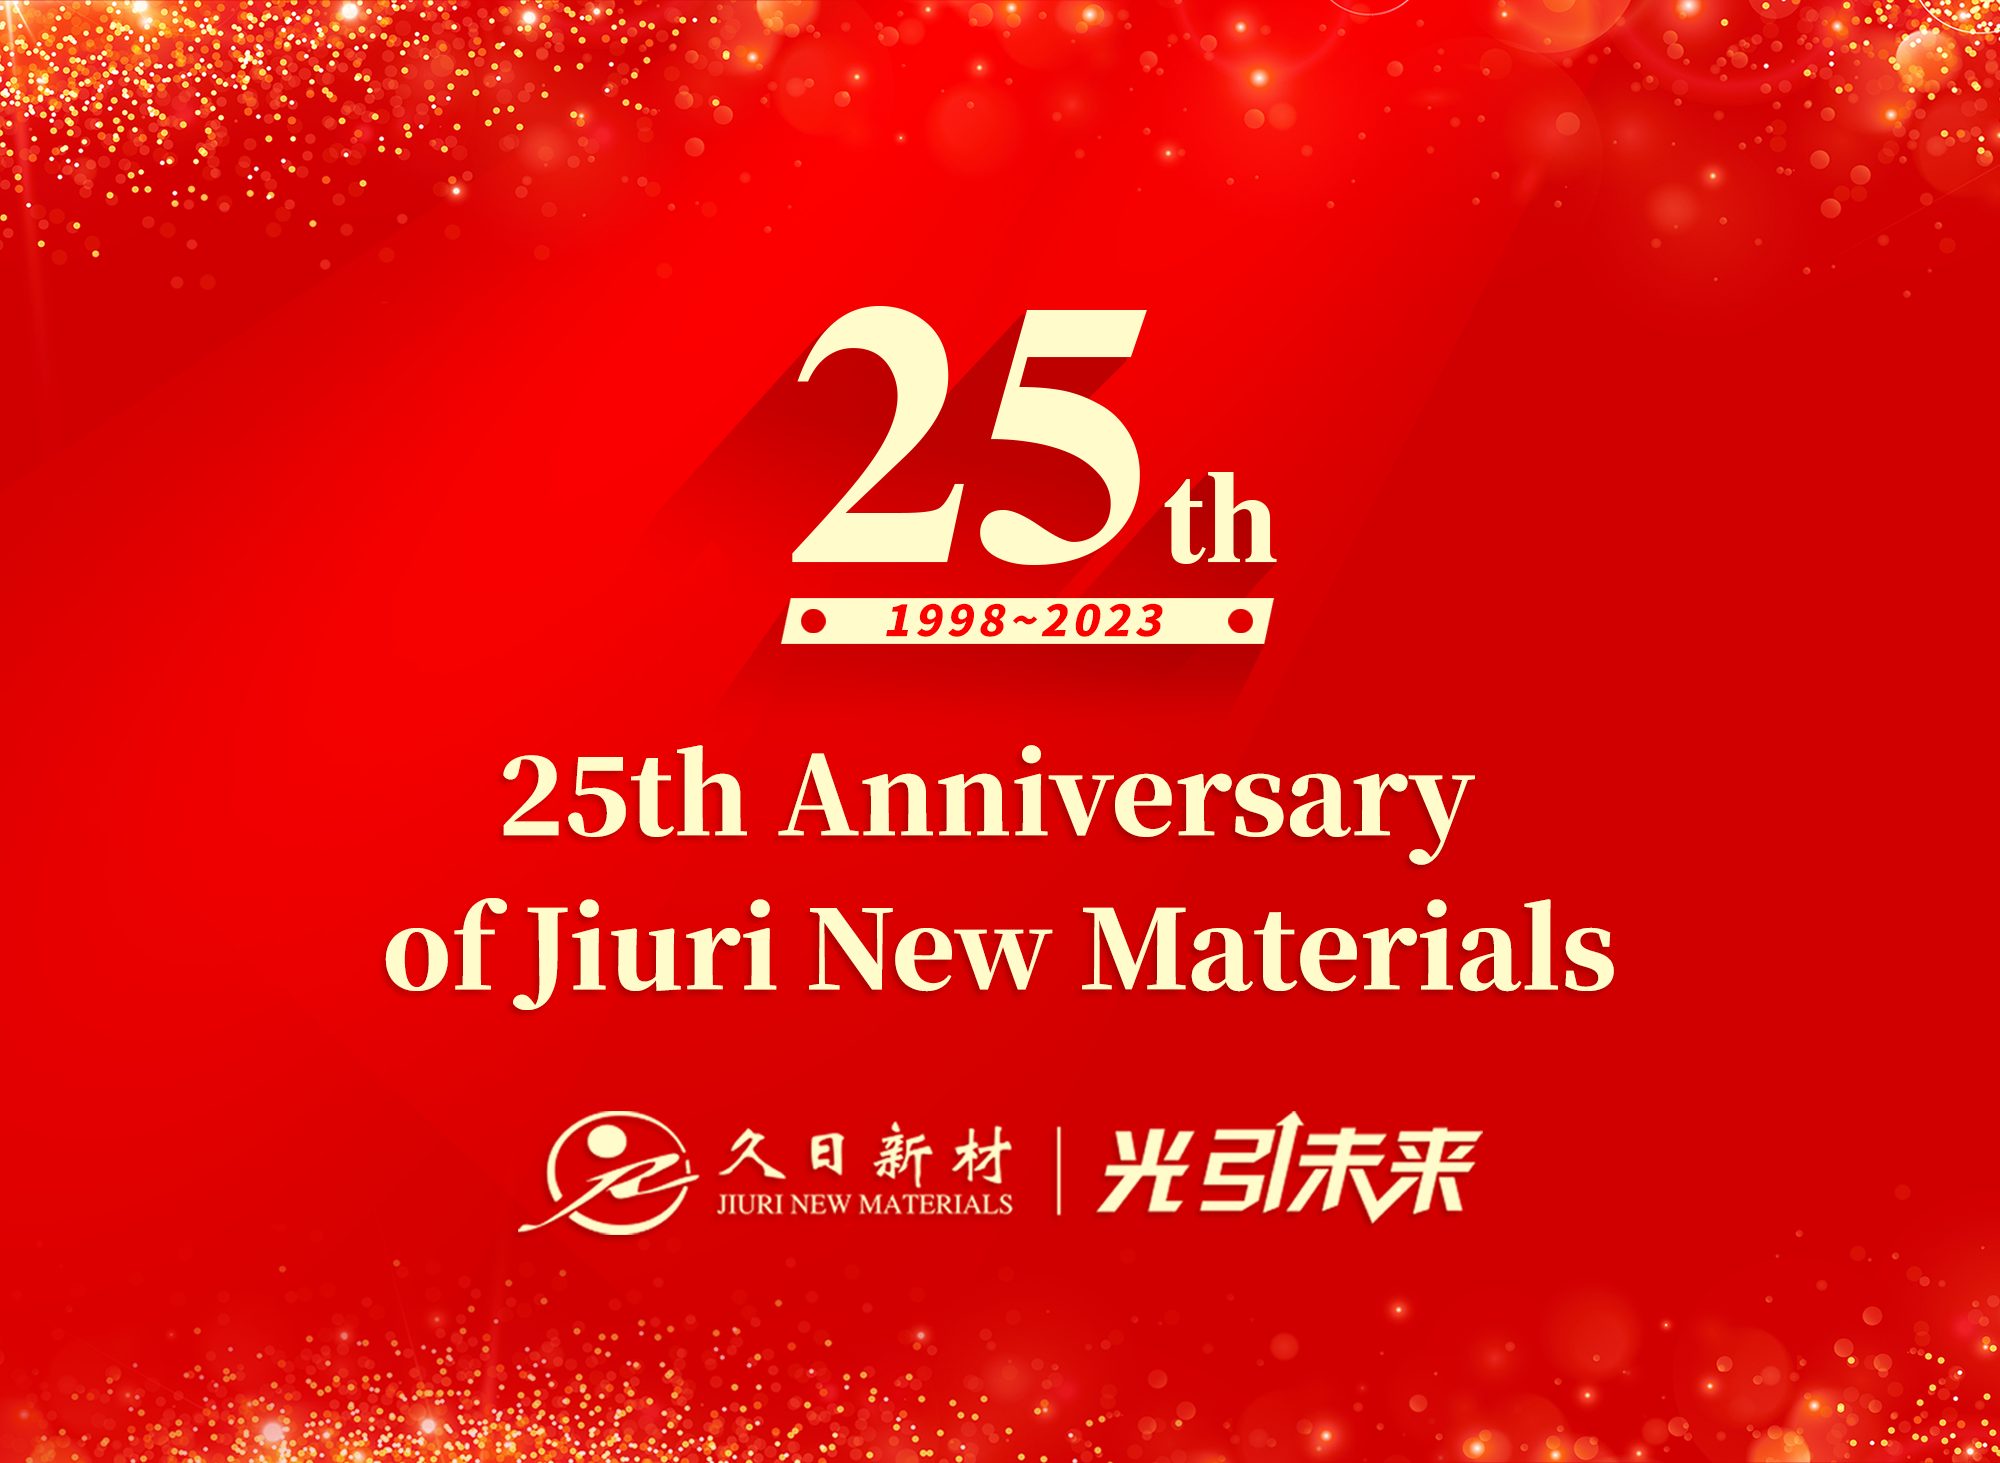 25th Anniversary of Jiuri New Materials